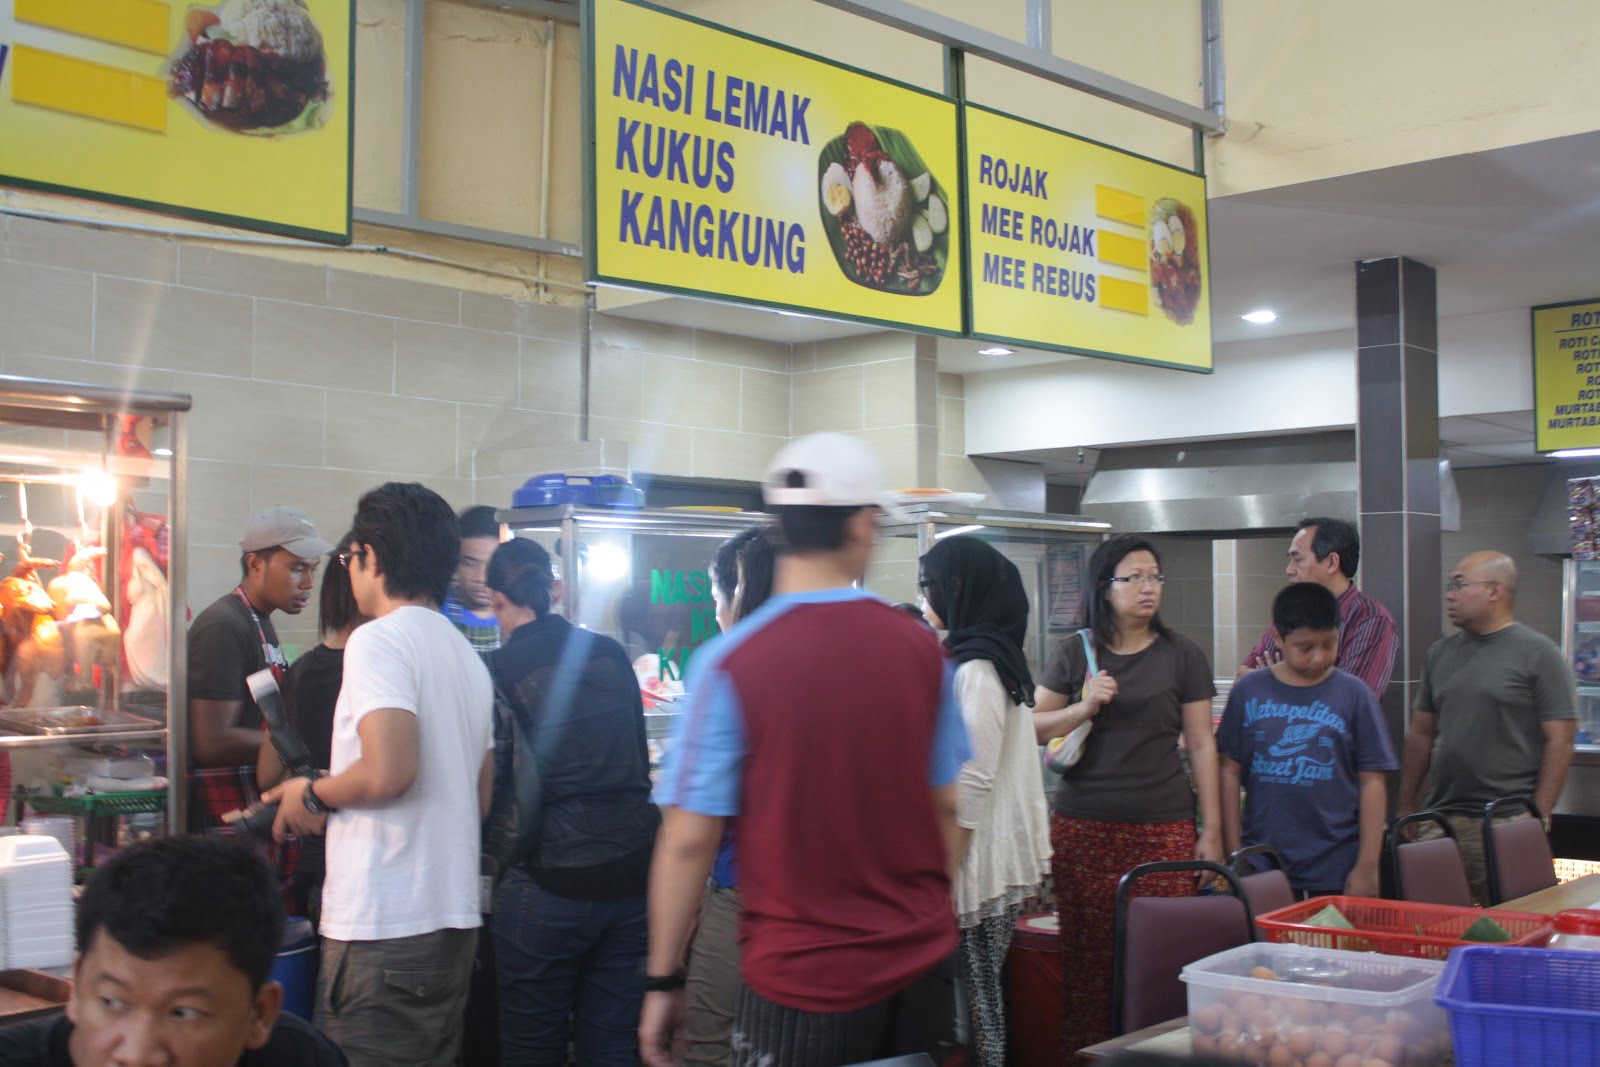 Sedap! 12 Kedai Makan Kelana Jaya (Honest Review) 2023 2. Sarapan Pagi di Kelana Jaya Nasi Lemak Kukus Kangkung Kelana Jaya